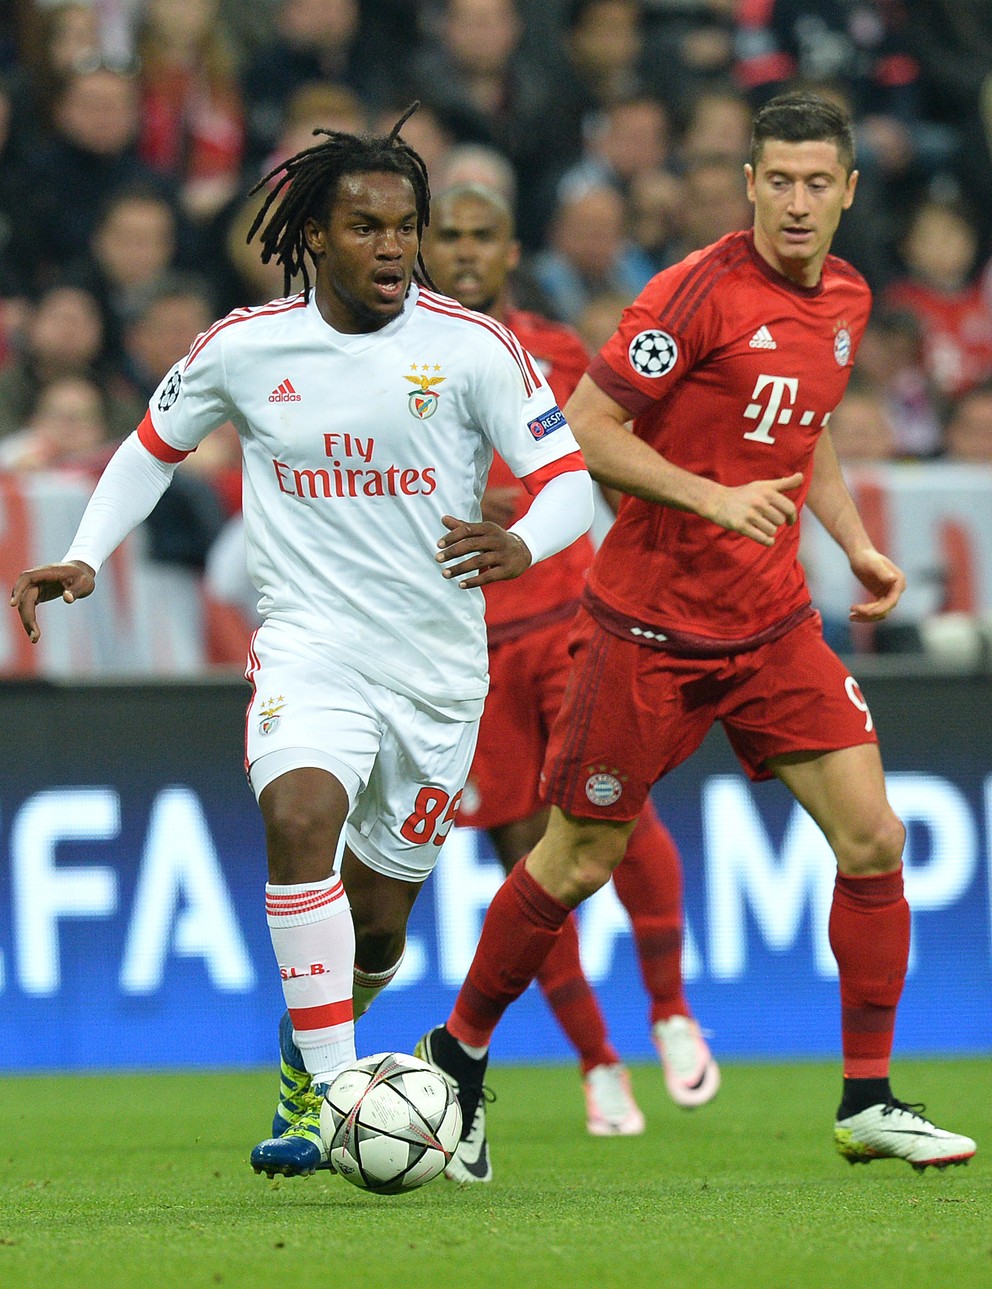 Zaujímavosťou je, že Sanches si proti Bayernu zahral v apríli v rámci štvrťfinále Ligy majstrov.